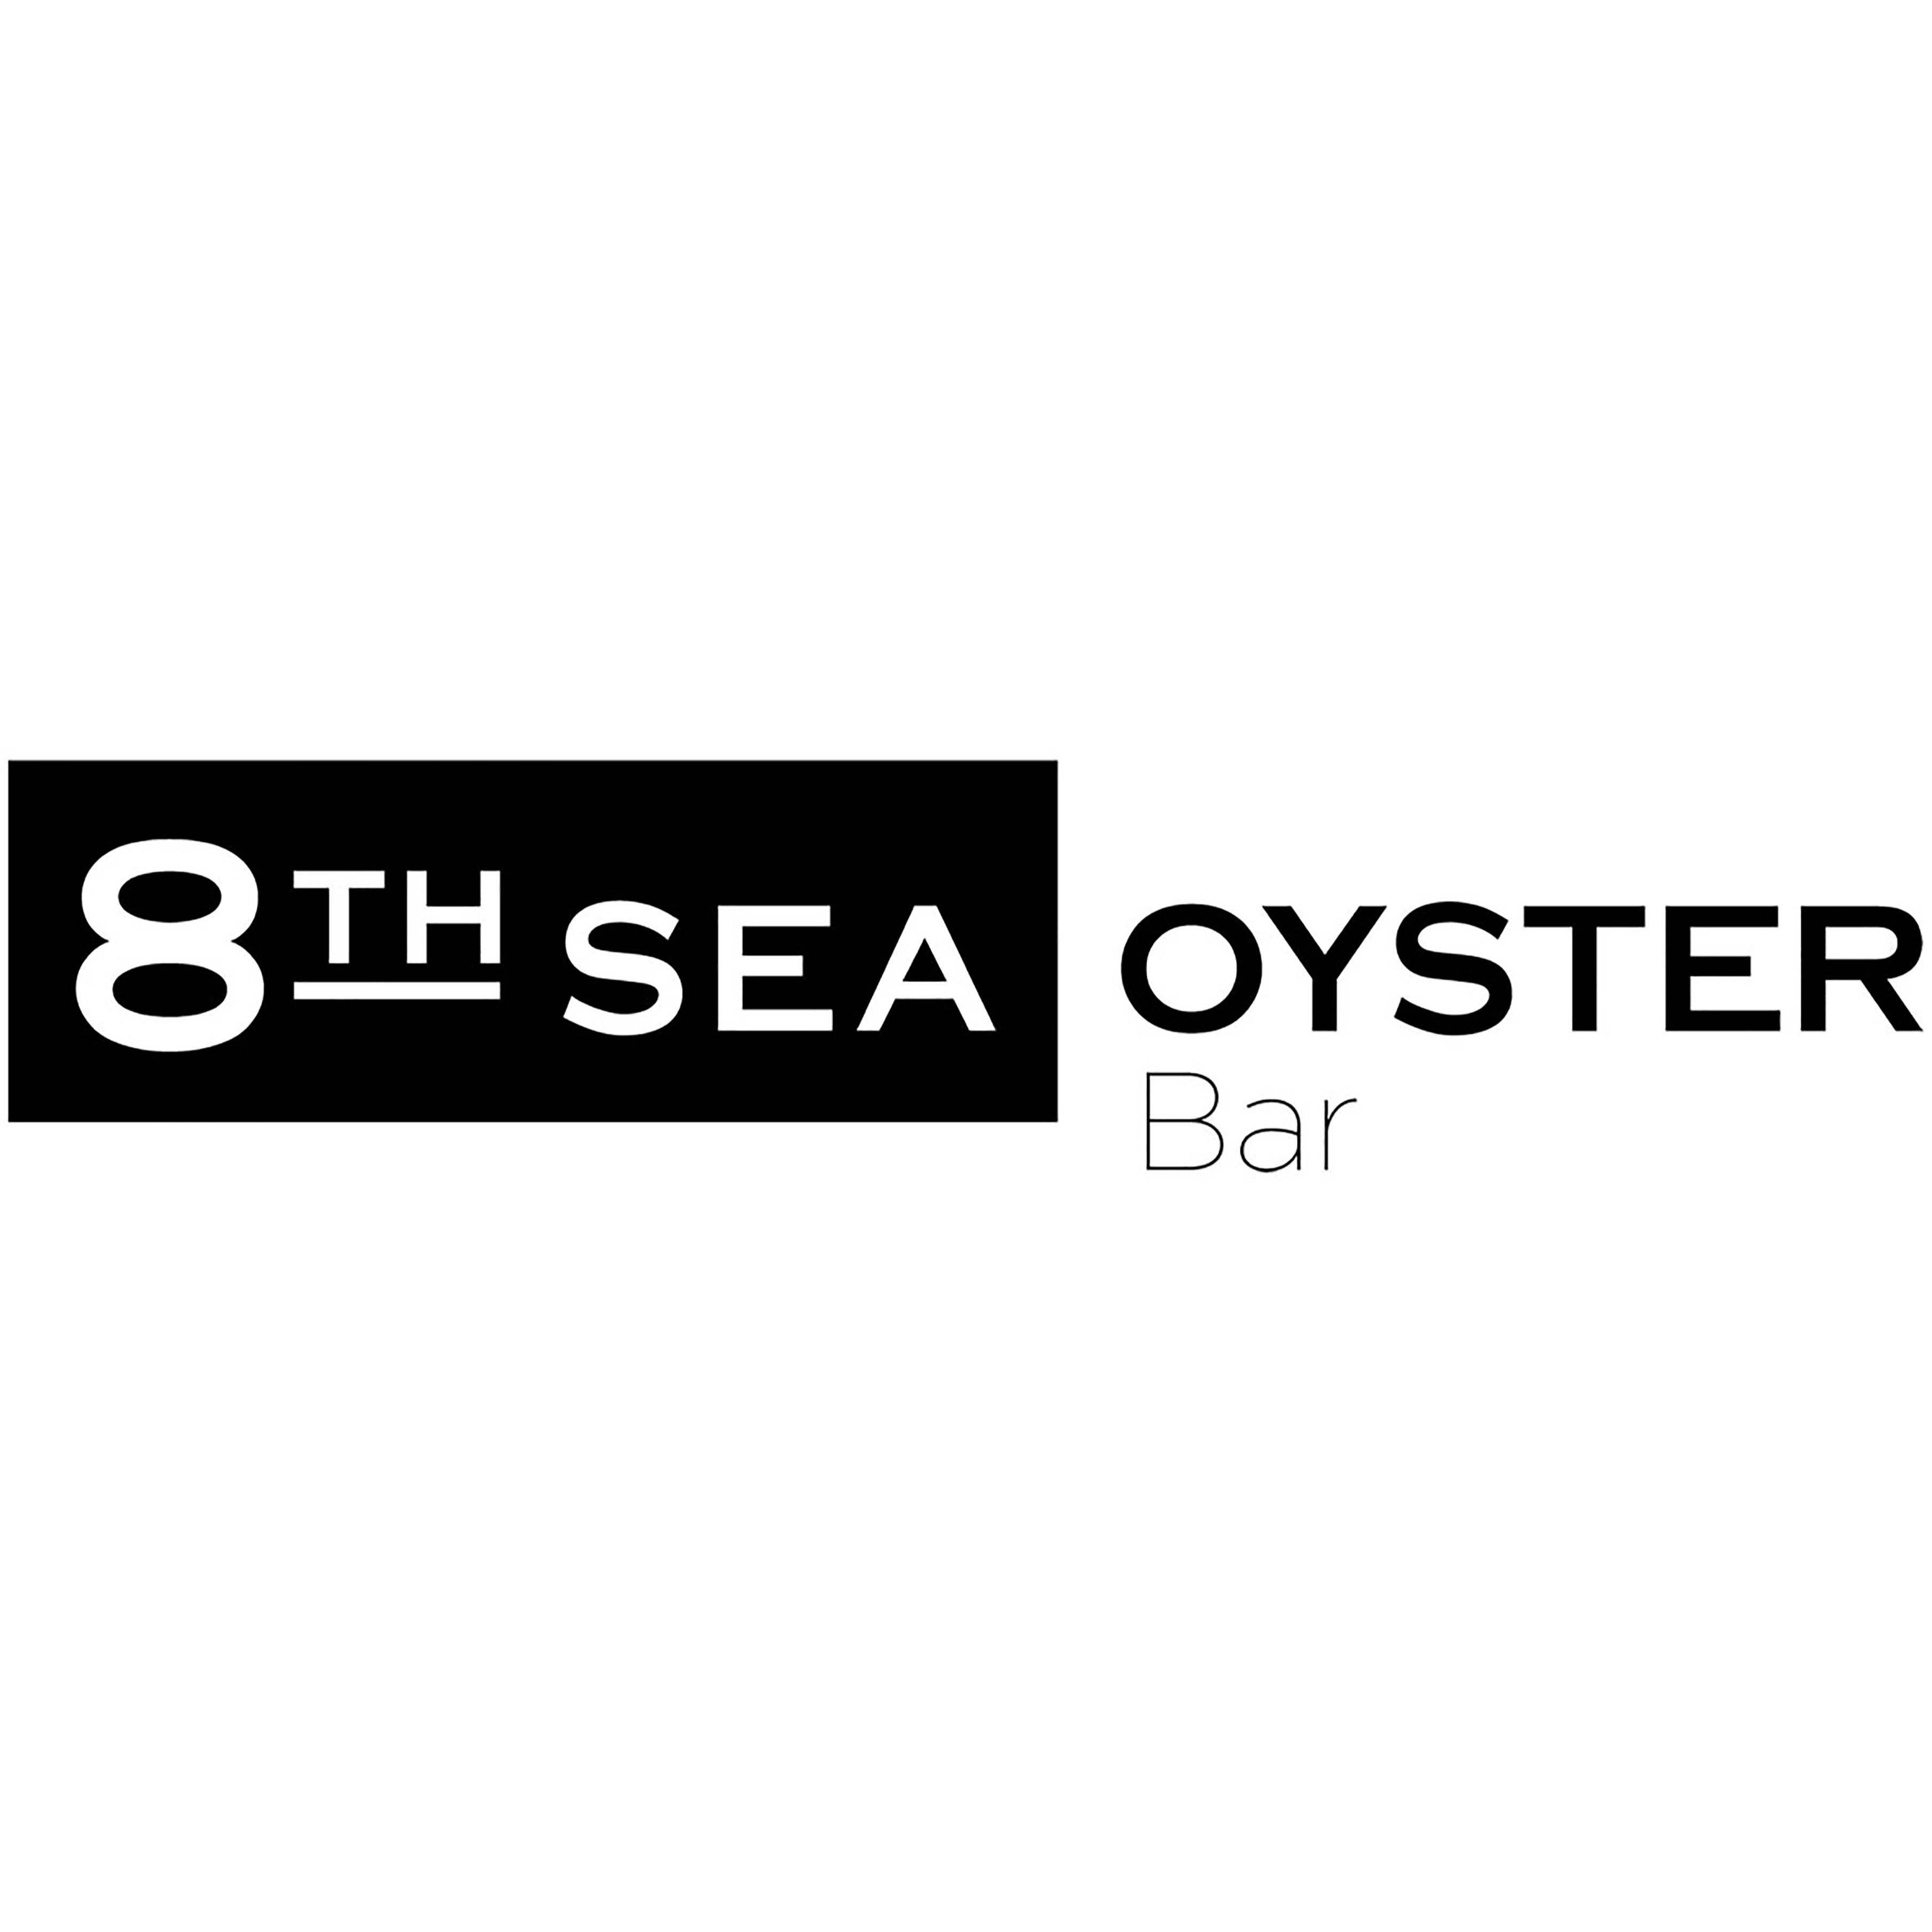 8TH SEA OYSTER Barミント神戸店 Logo